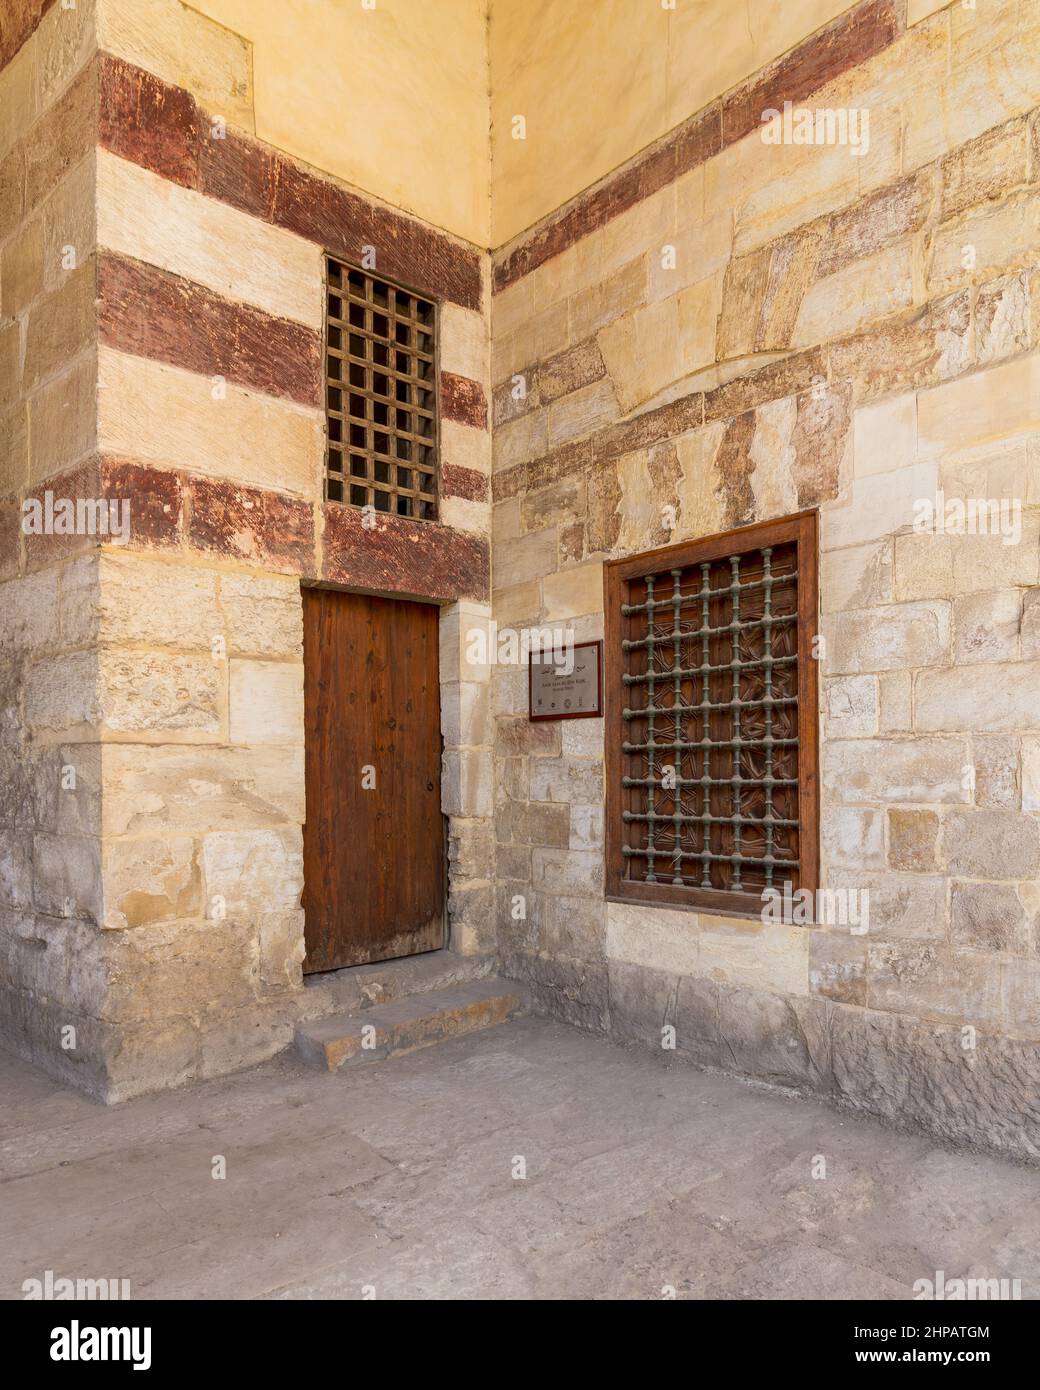 Cámara de Burial del Príncipe AlaaAl Din Kojk de la era Mamluk, adjunta a la Mezquita de Aqsunqur, también conocida como Mezquita Azul, distrito de Bab El Wazir, El Viejo Cairo, Egipto Foto de stock